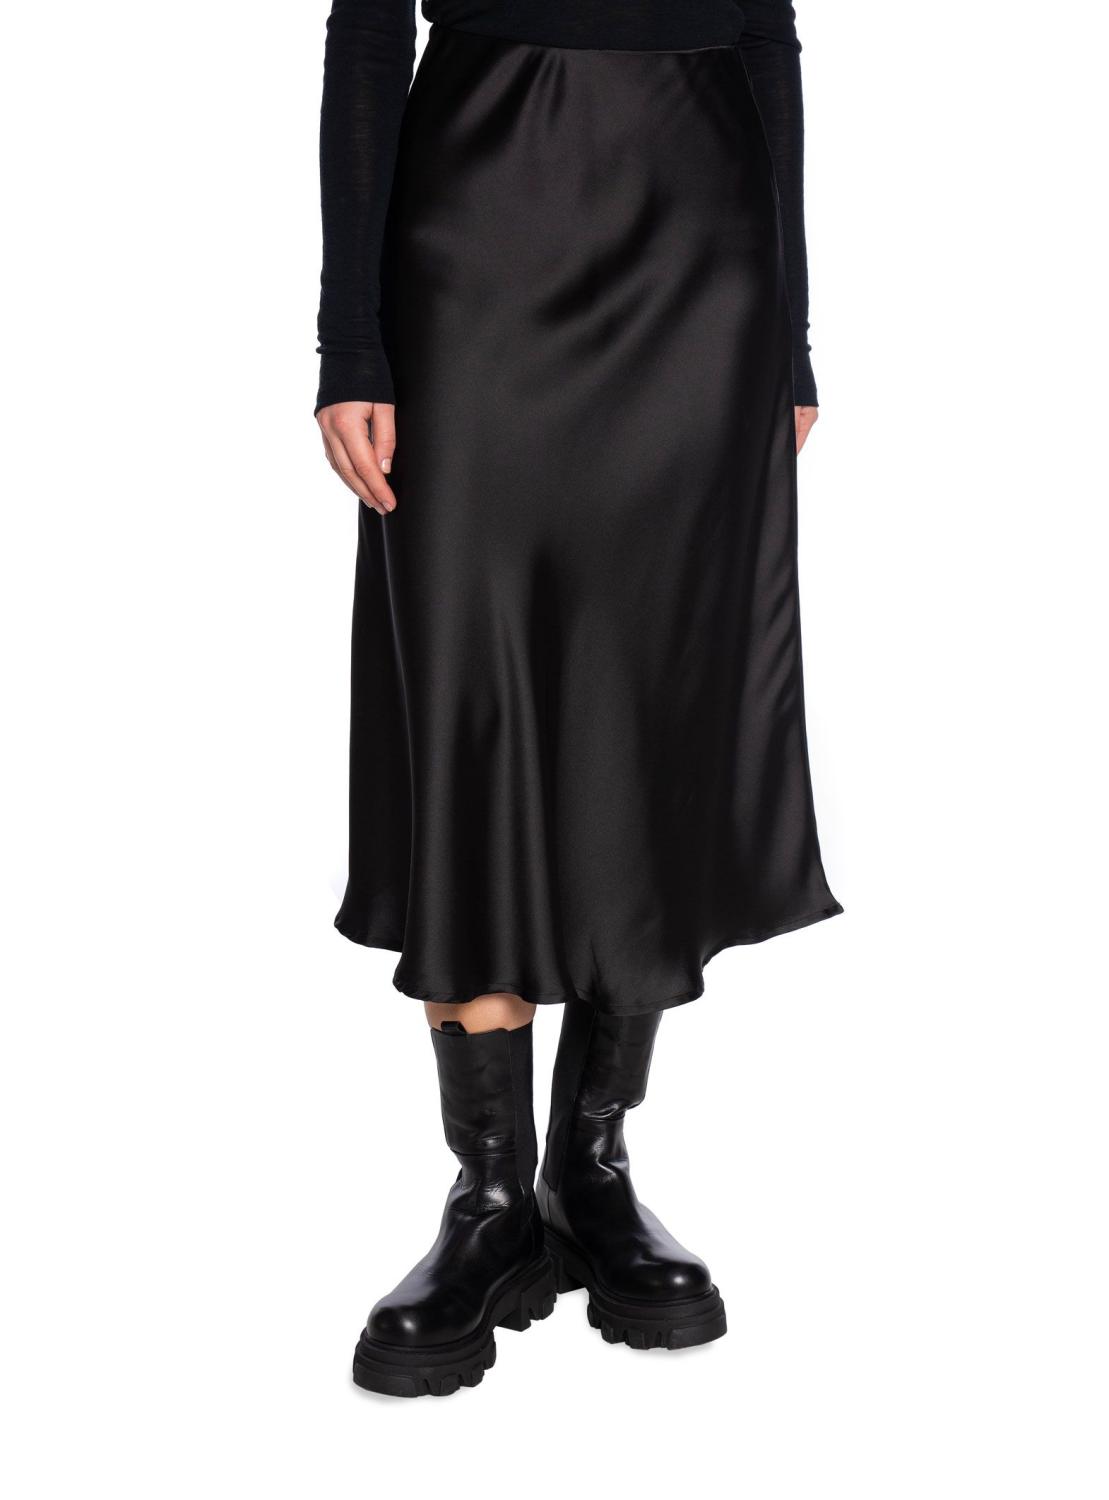 Bovary Satin Skirt Black